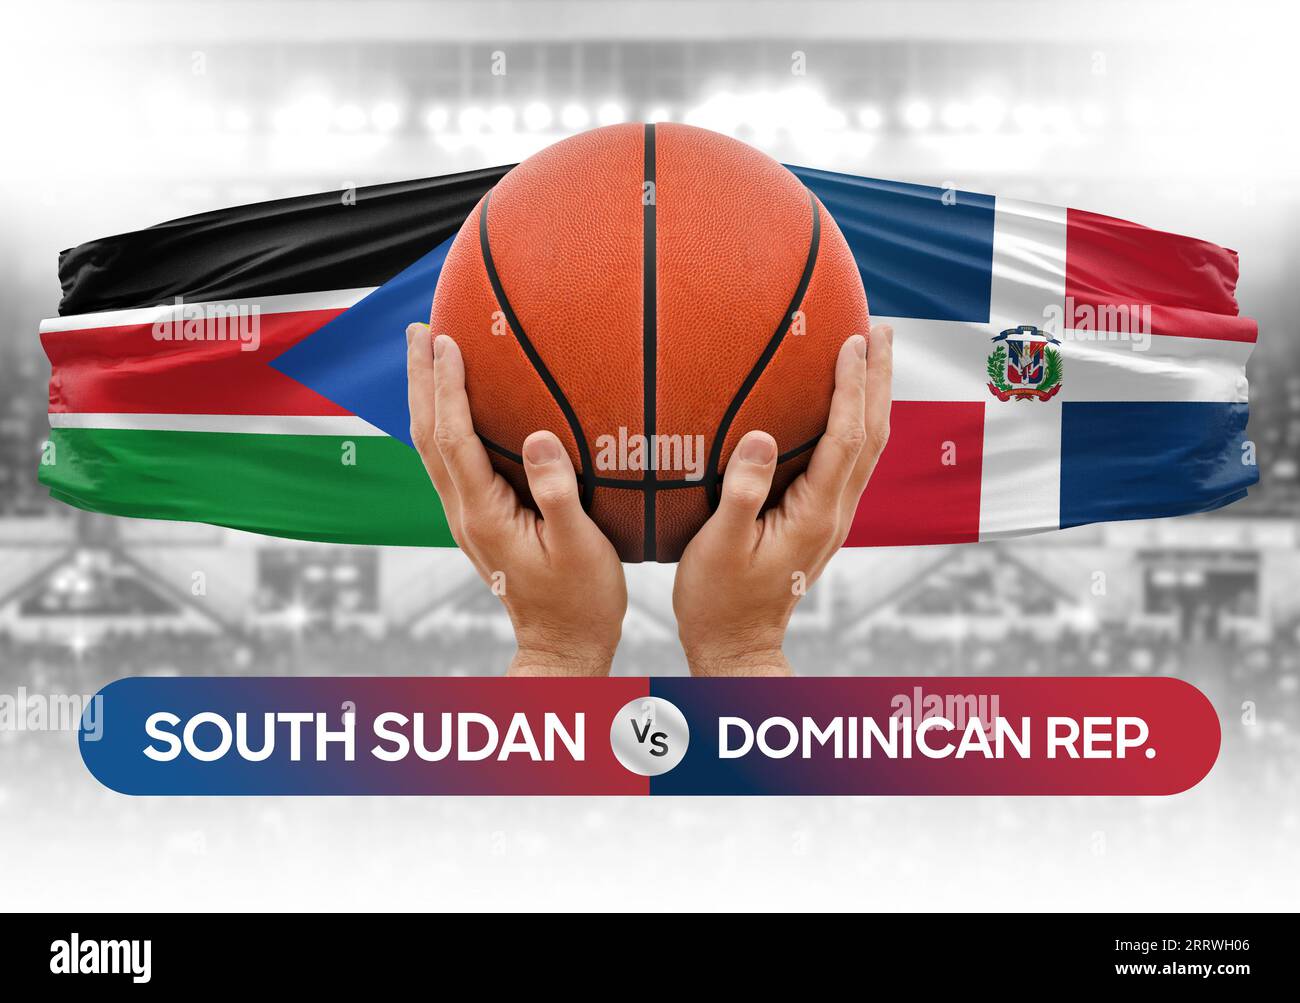 Südsudan vs Dominikanische Republik nationale Basketballmannschaften Basketballspiel Wettbewerb Cup Konzept Bild Stockfoto